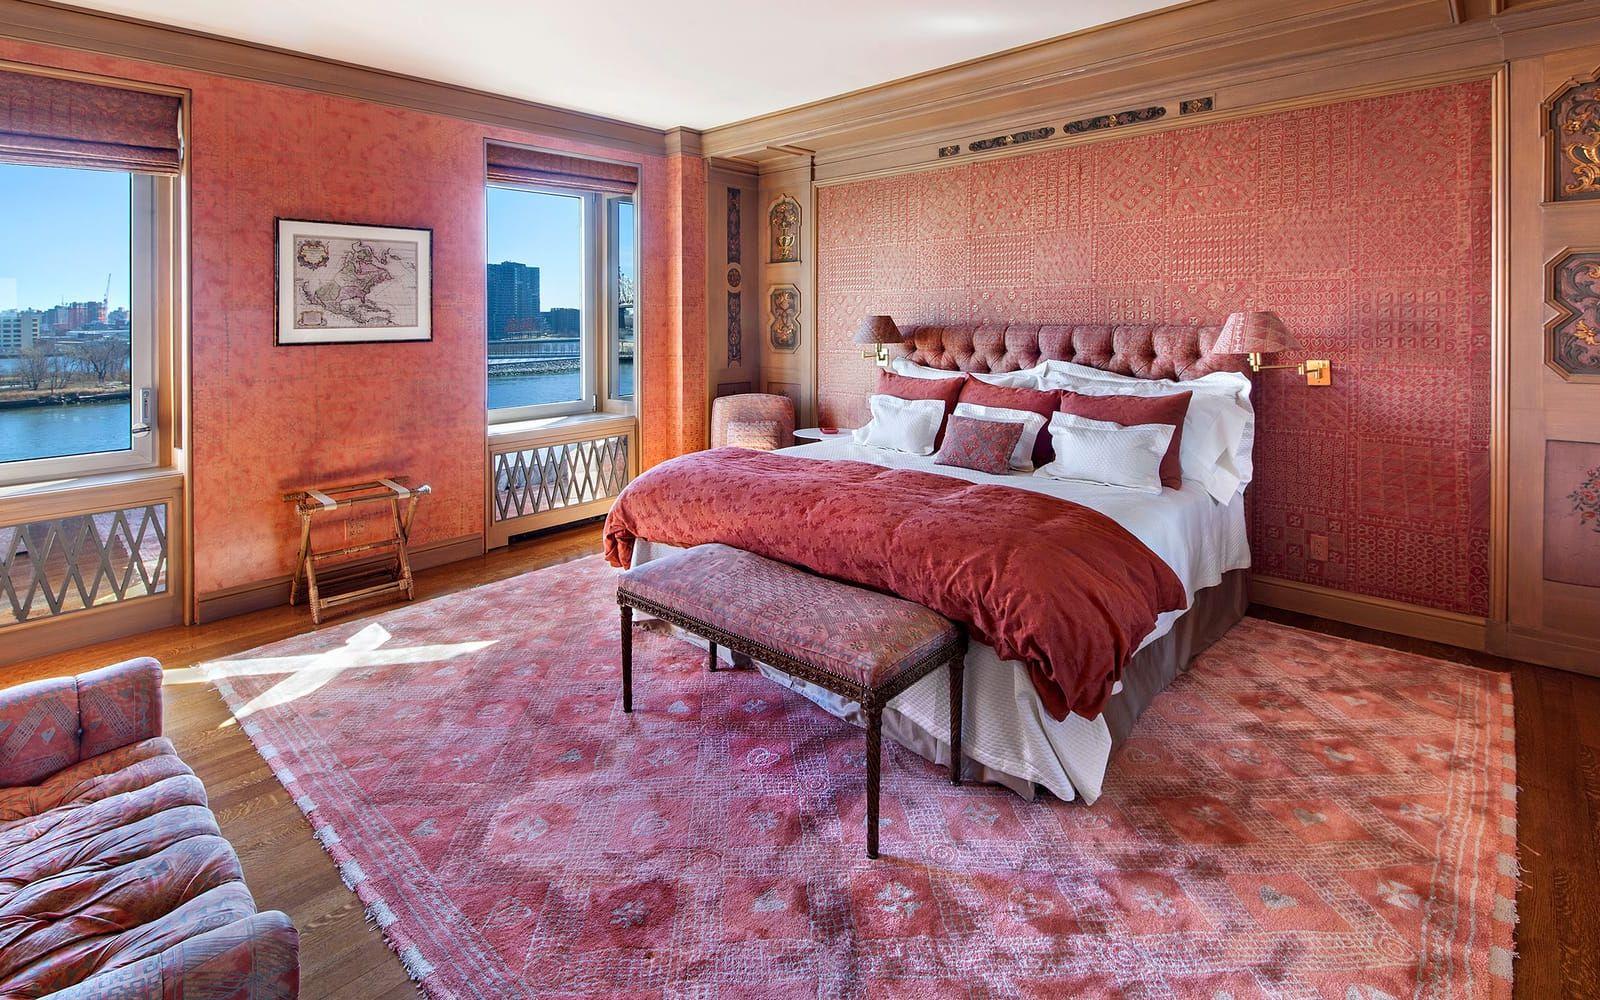 I sovrummet är väggarna klädda i rosfärgat siden, vilket Greta Garbo själv har valt. I panelen finns handsnidade träbitar från en kista som Greta Garbo tagit med från Sverige. Foto: Halstead Property, LLC
